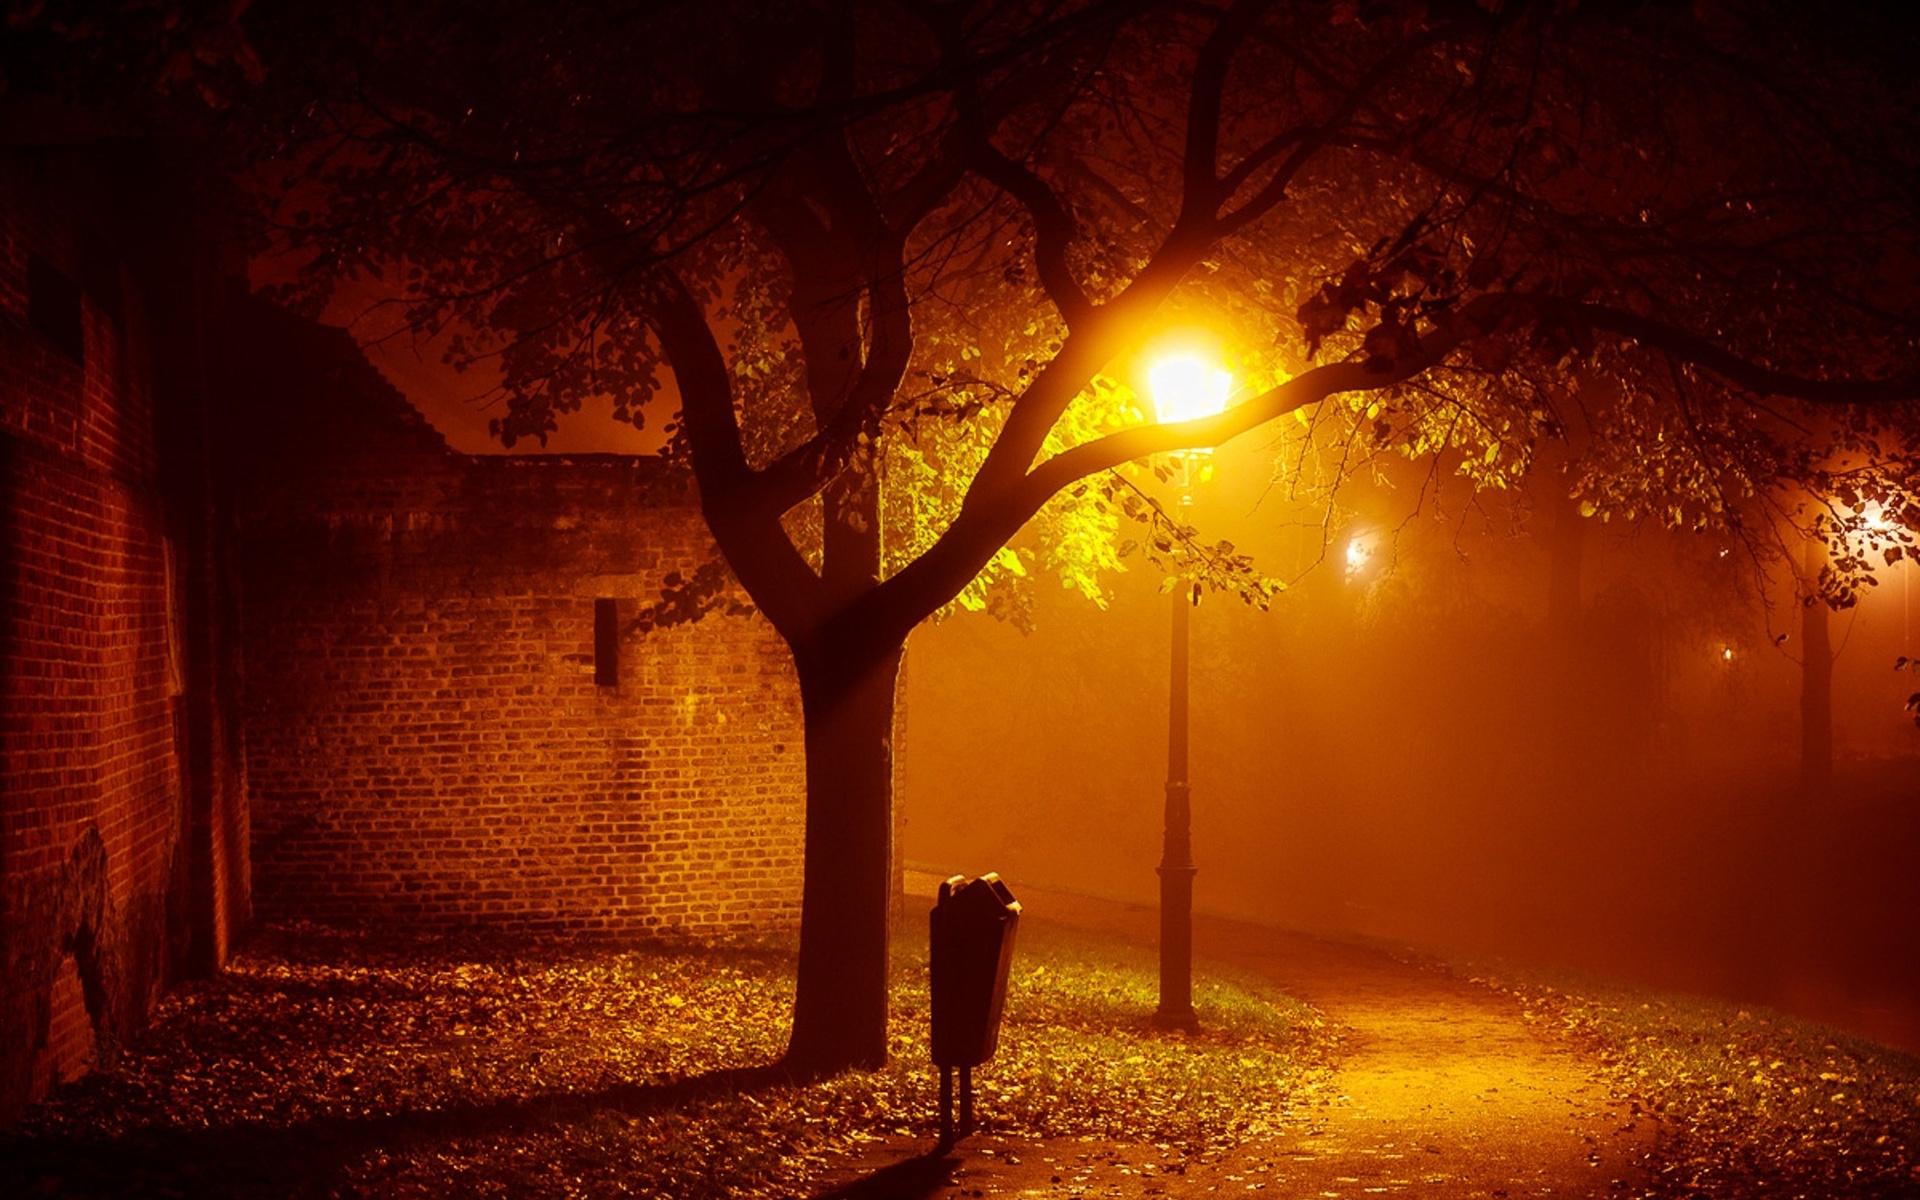 Landscapes night lights mood autumn fall seasonal fog mist